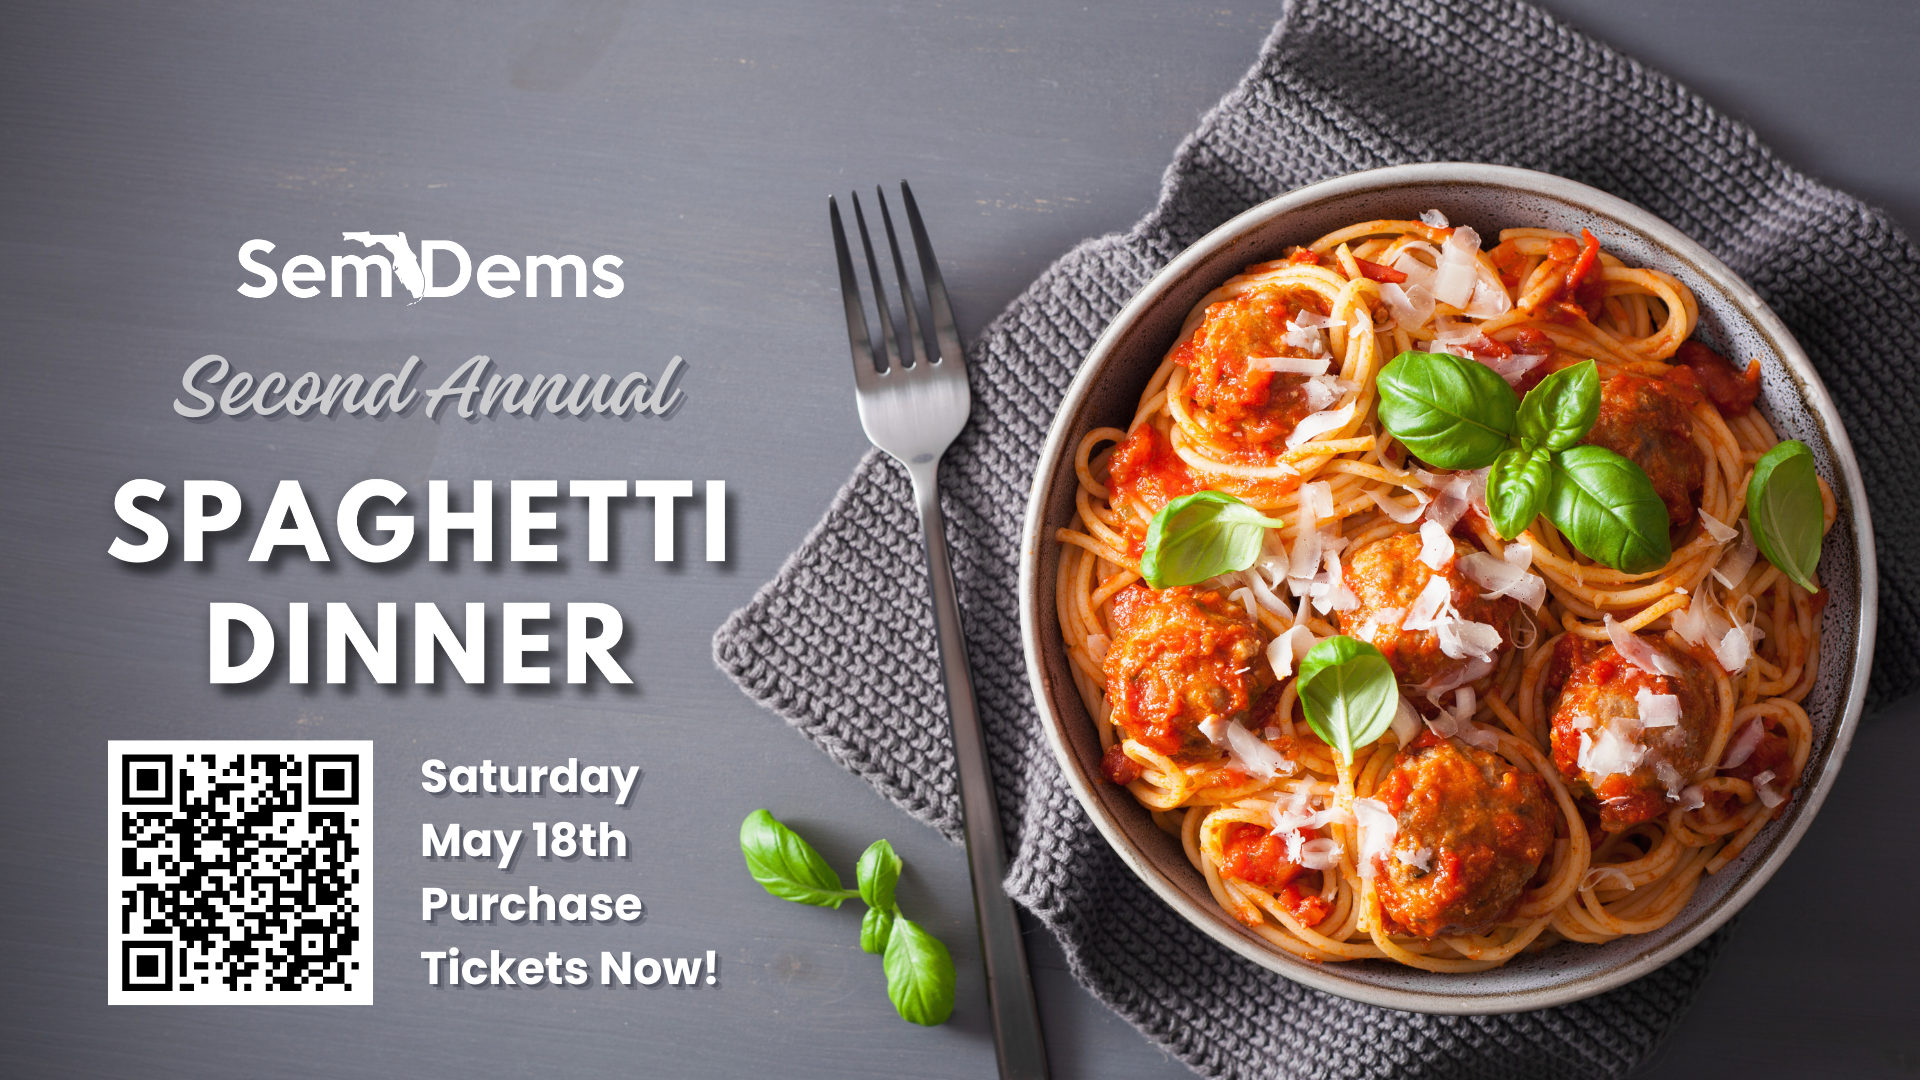 SemDems Spaghetti Dinner Flyer